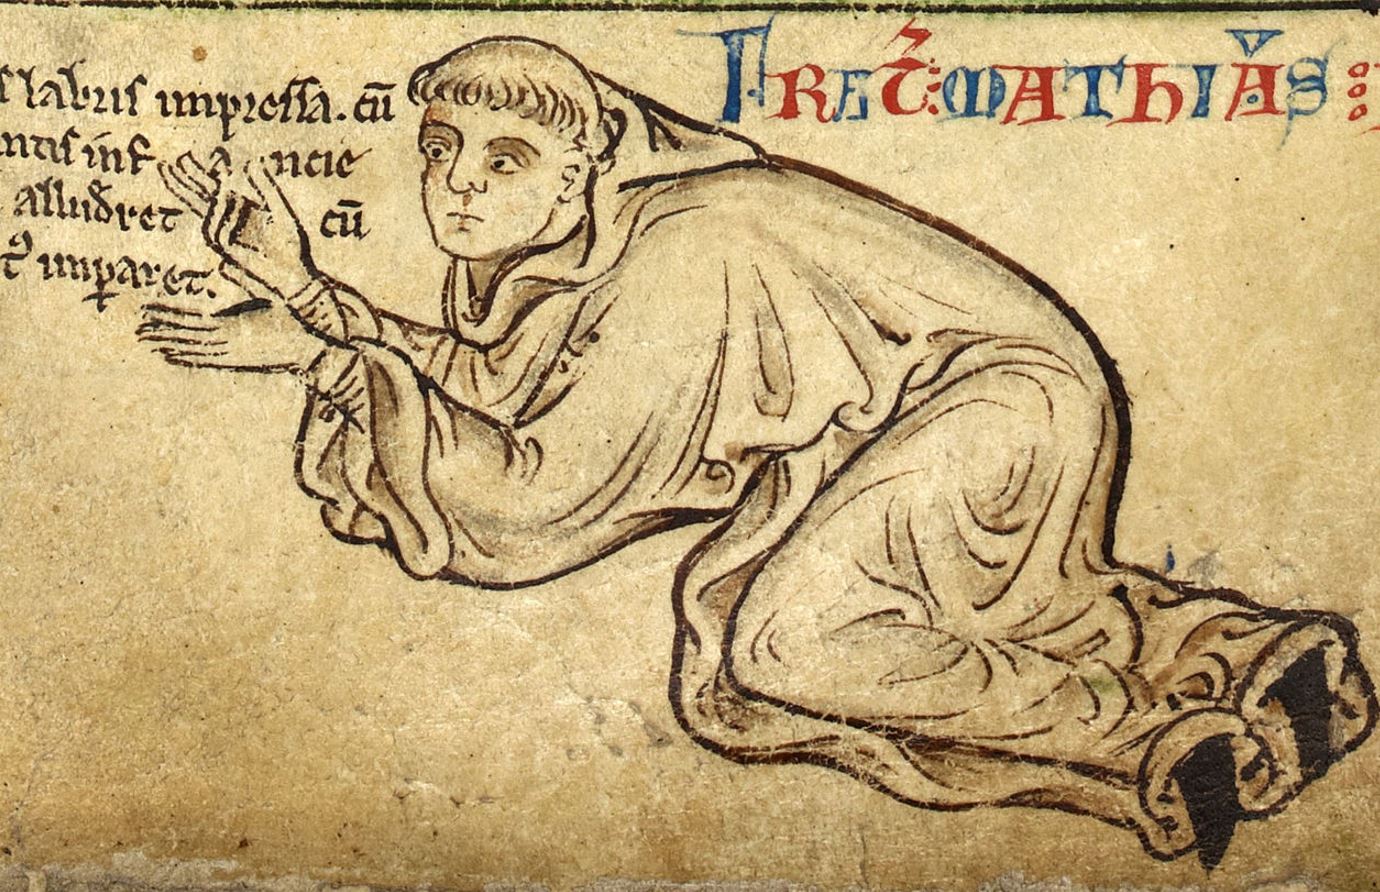 Σχέδιο του Μάθιου Πάρις, βενεδικτίνου μοναχού, καλλιτέχνη, χαρτογράφου και χρονικογράφου της Αγγλίας στις αρχές του 13ου αι.